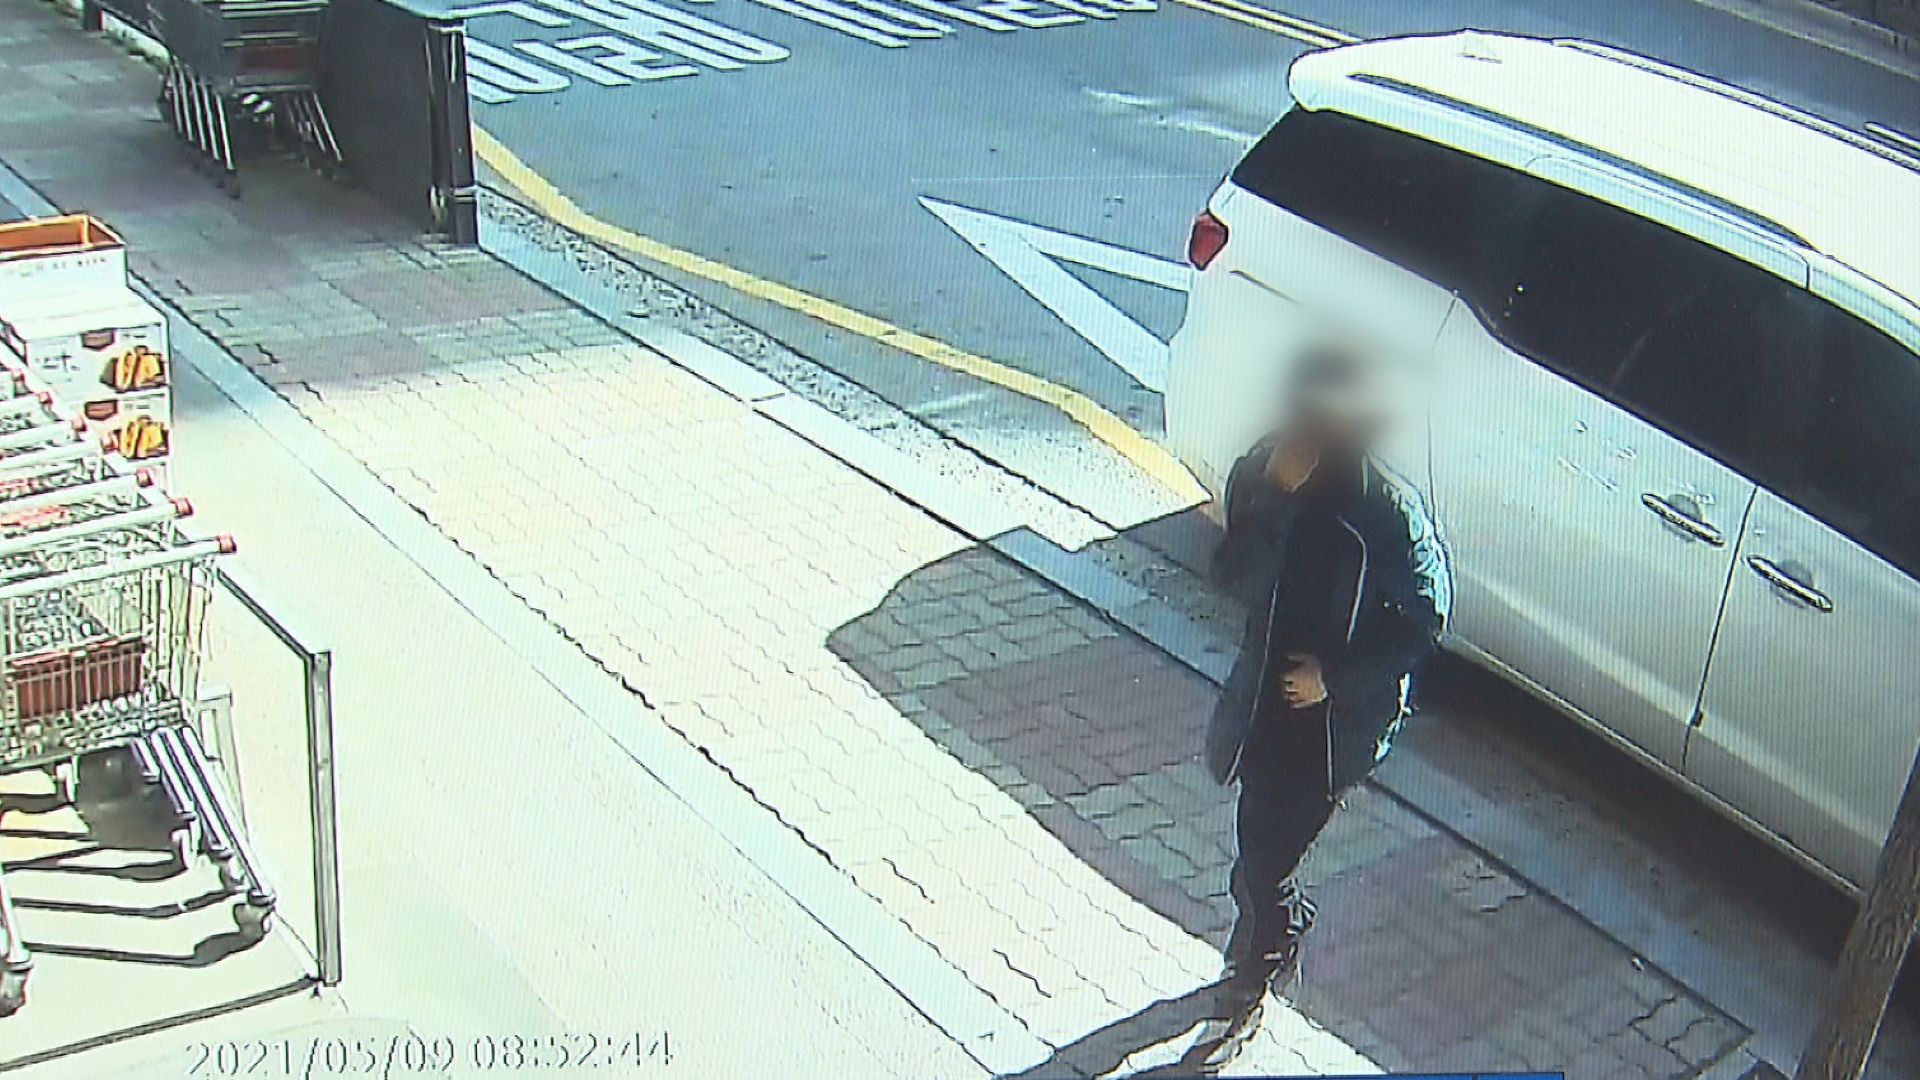 마트 CCTV 화면. 윗옷으로 코와 입을 가린 채 한 여성이 마트로 들어오고 있다.